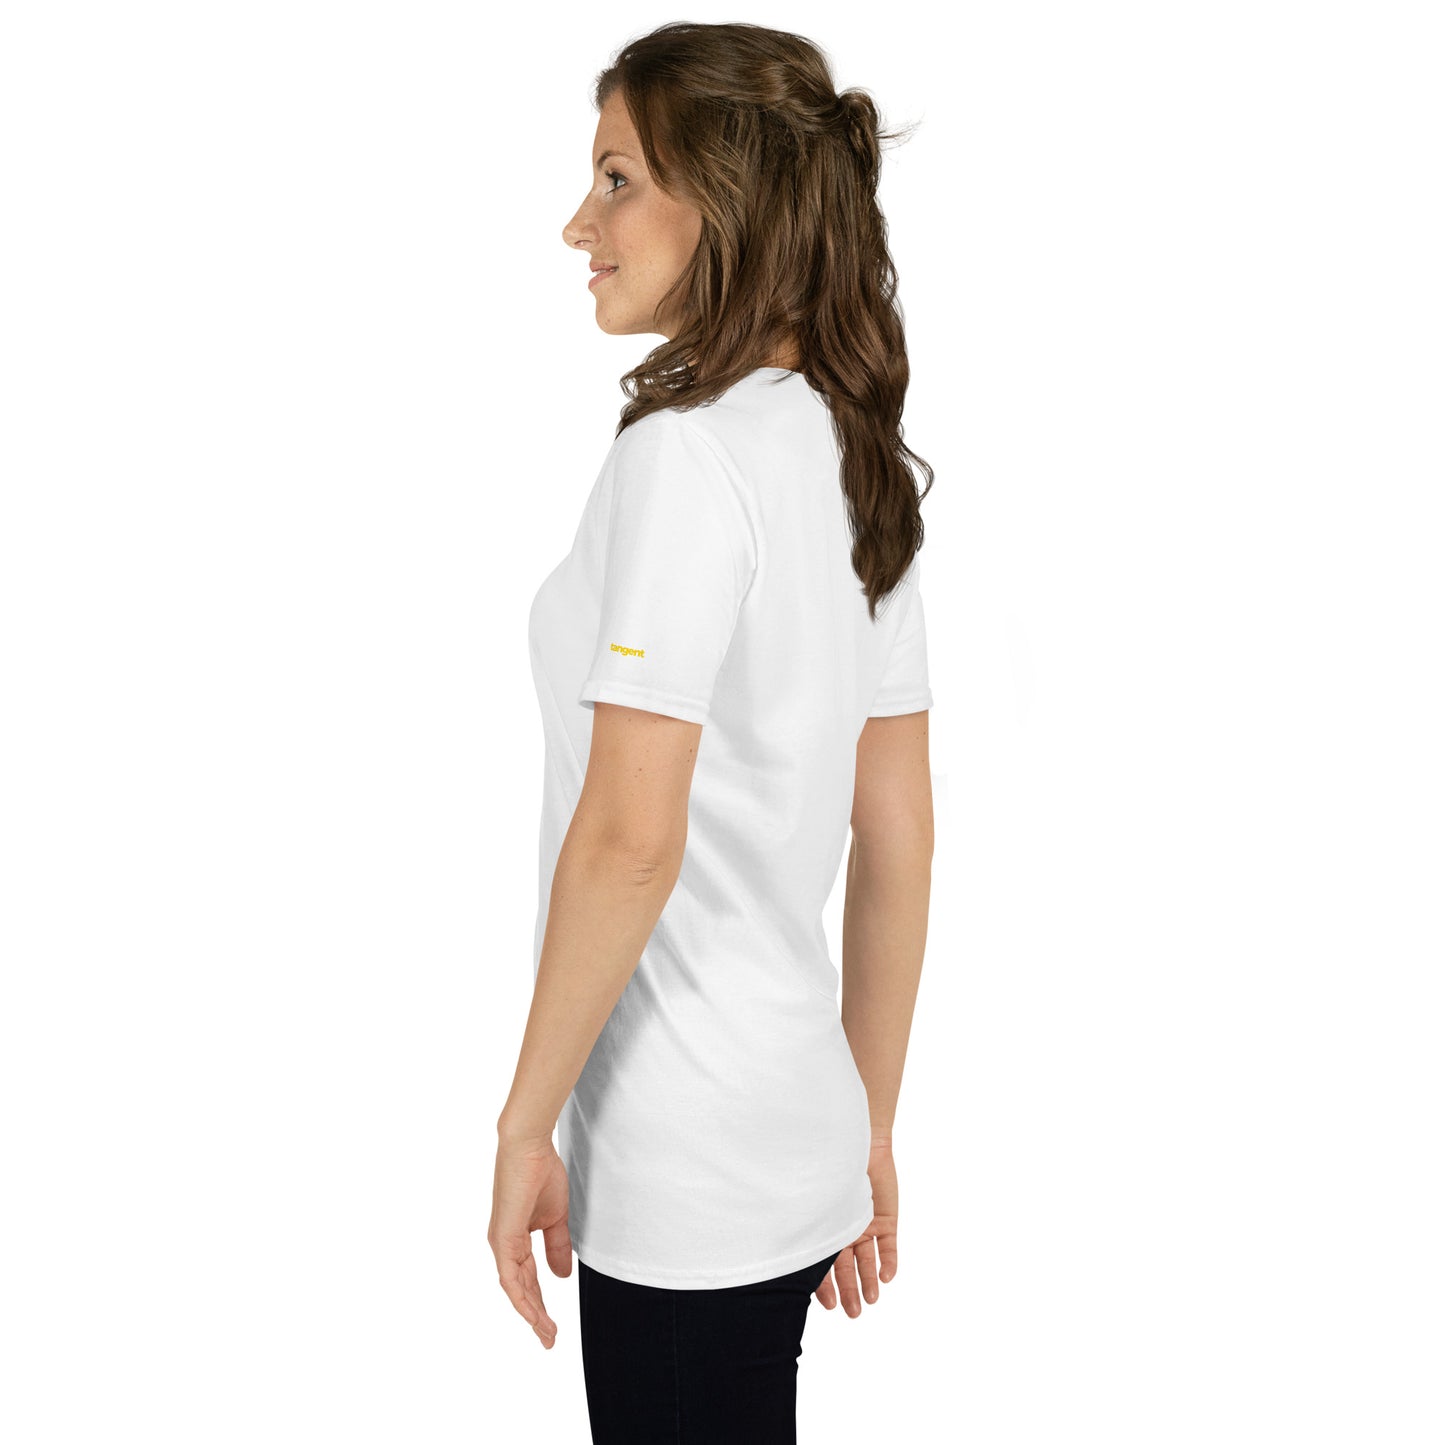 Simplicity Signature Women's Short-Sleeve T-Shirt